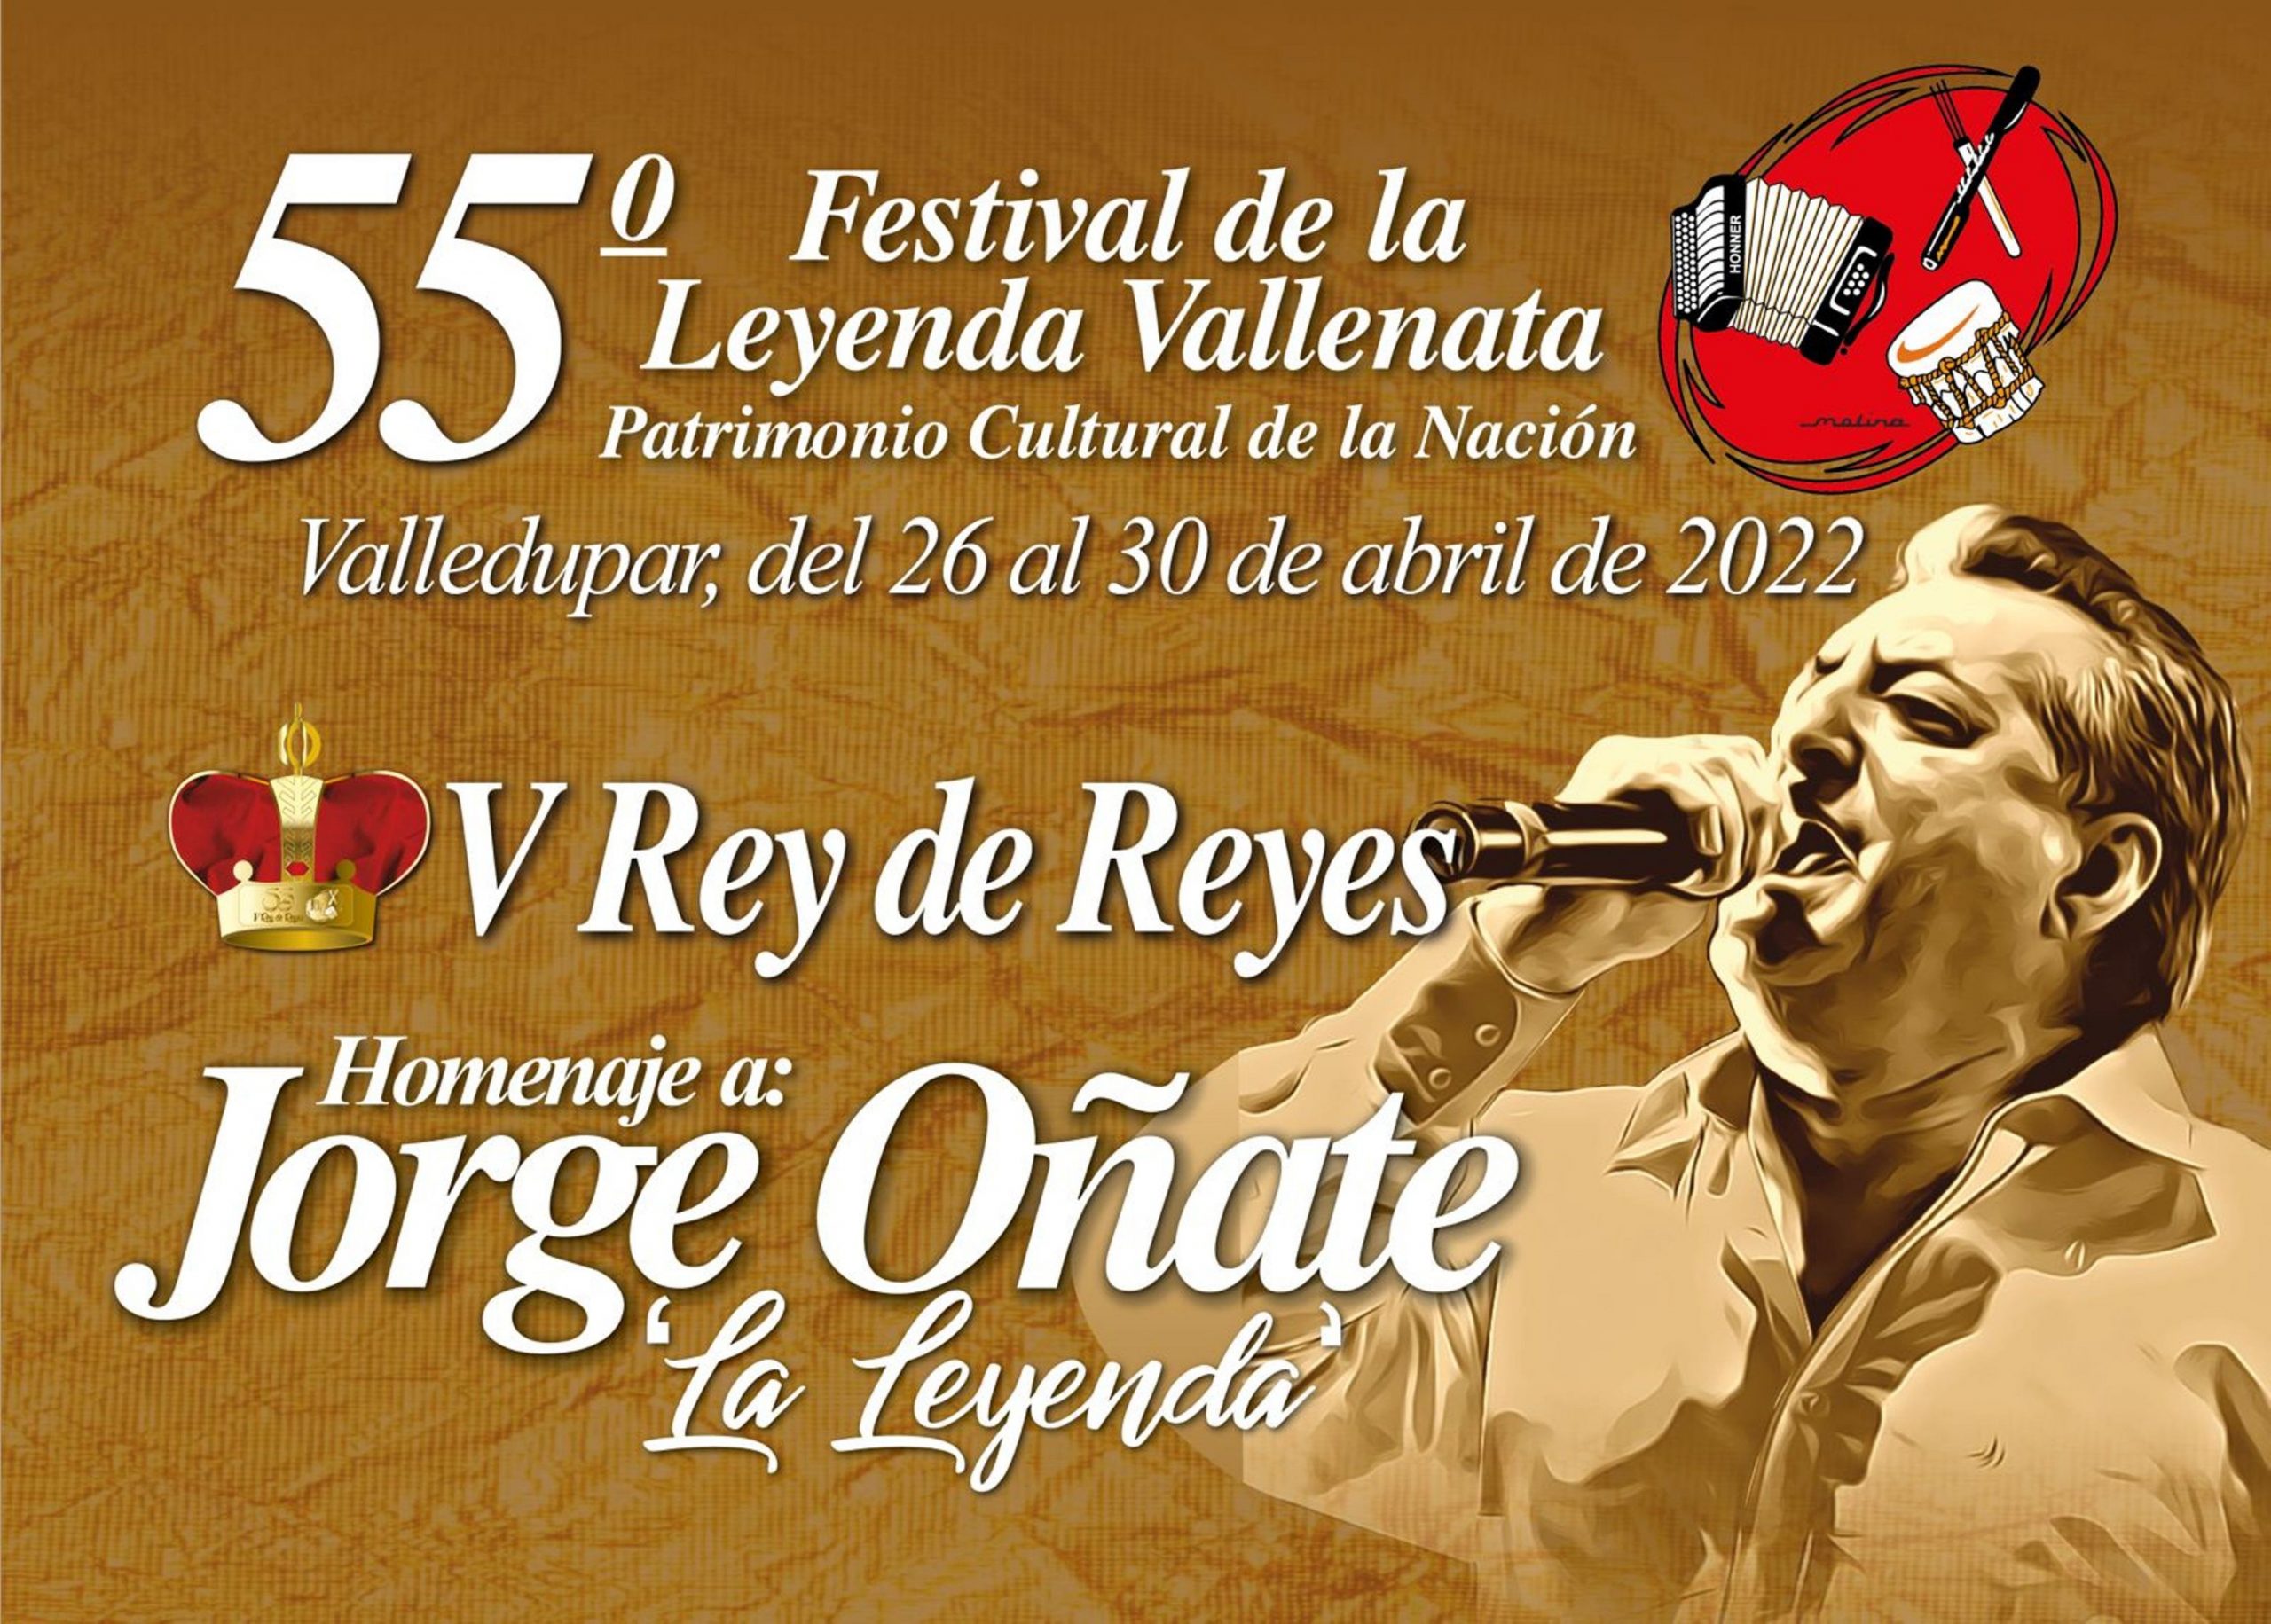 Festival Vallenato en Estados Unidos, rendirá homenaje a la Fundación Festival de la Leyenda Vallenata